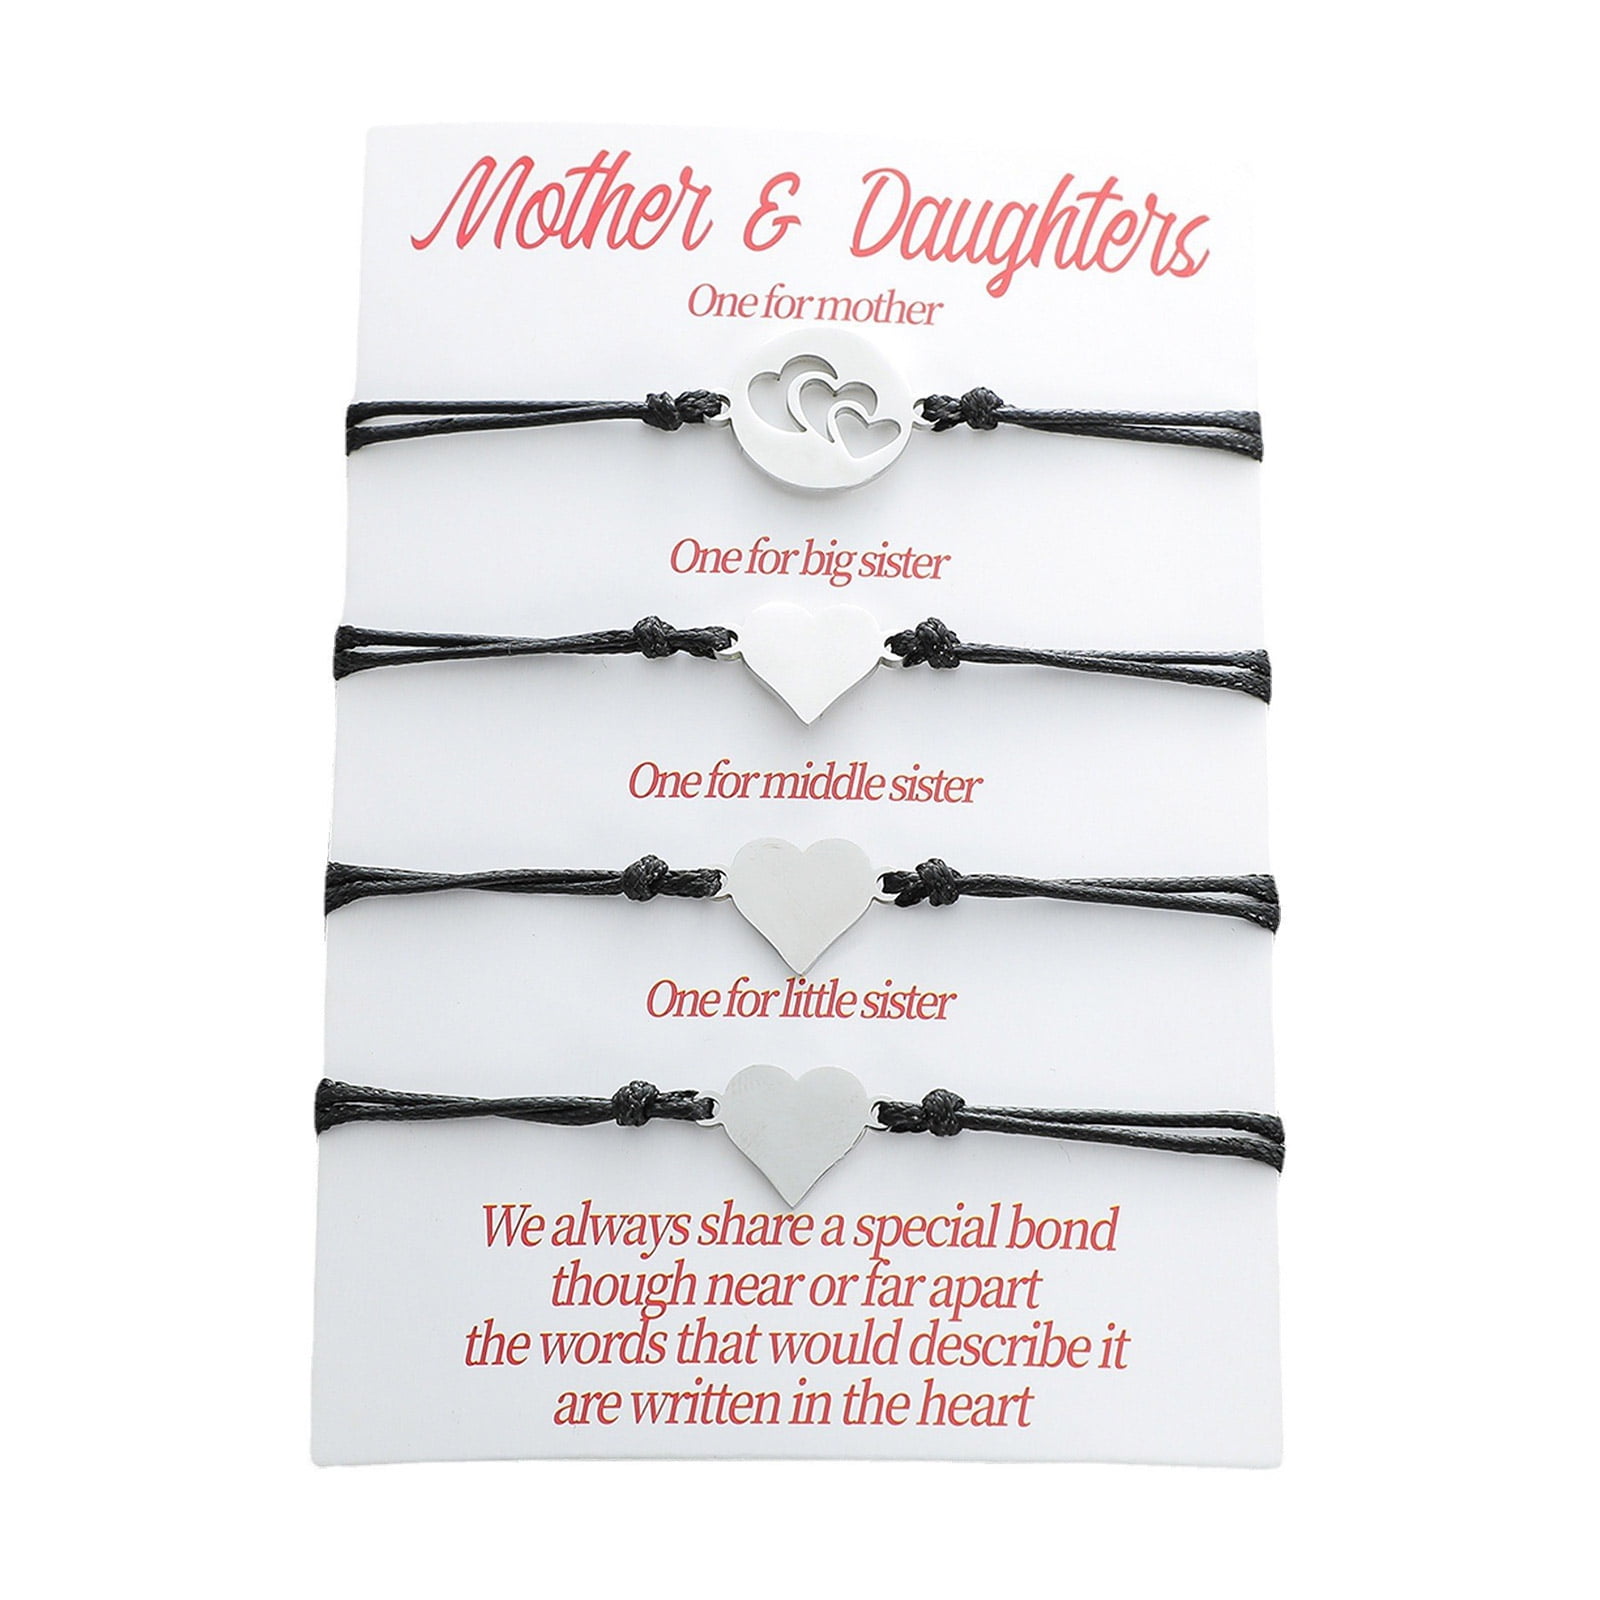 Friendship Bracelets - Best Friendship Bracelet Kits 2023